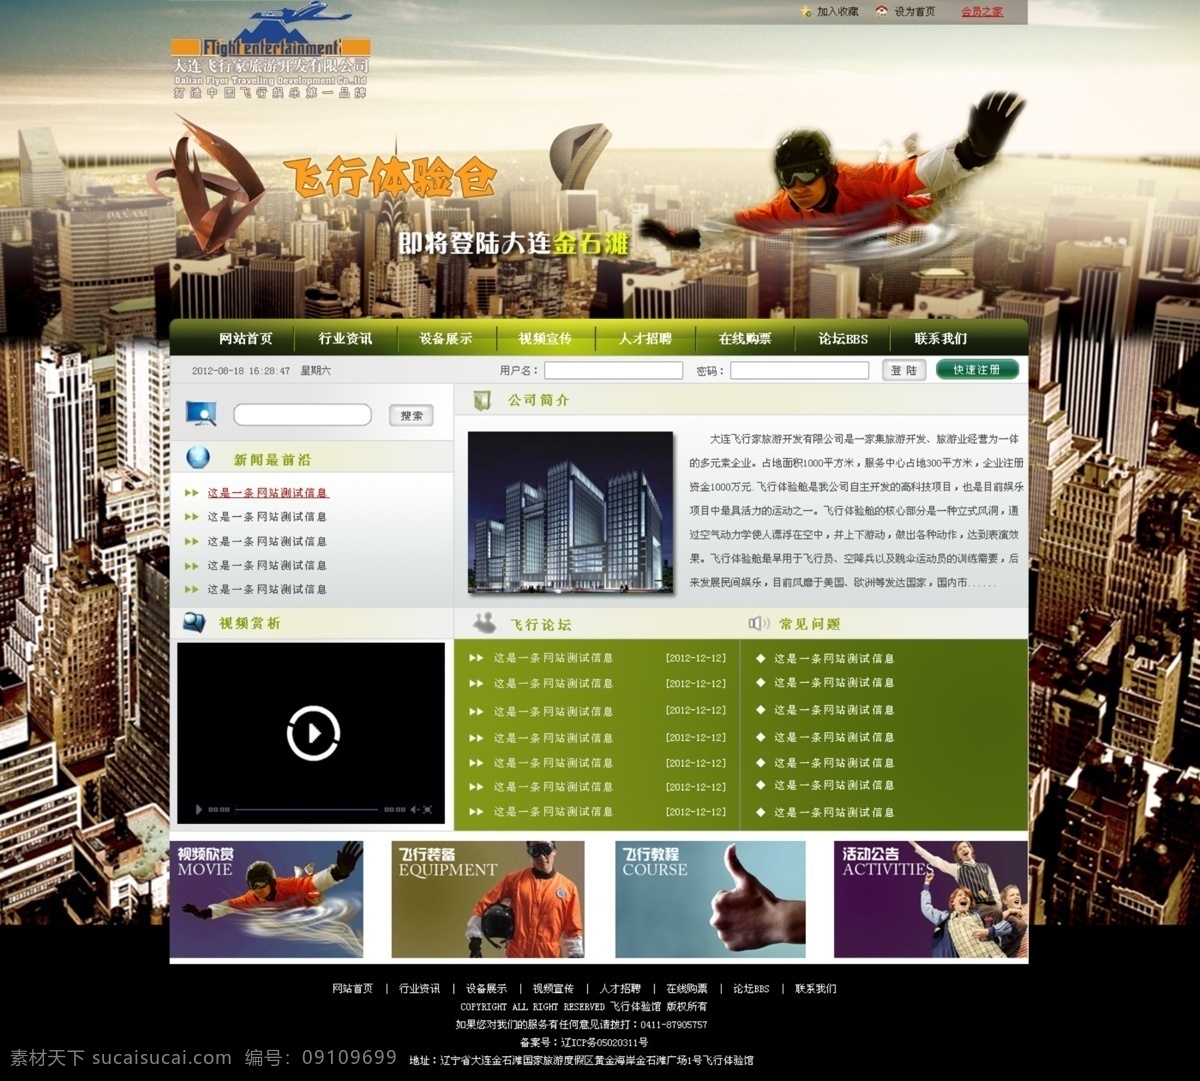 飞行 俱乐部 网站 效果图 网站效果图 原创设计 原创网页设计